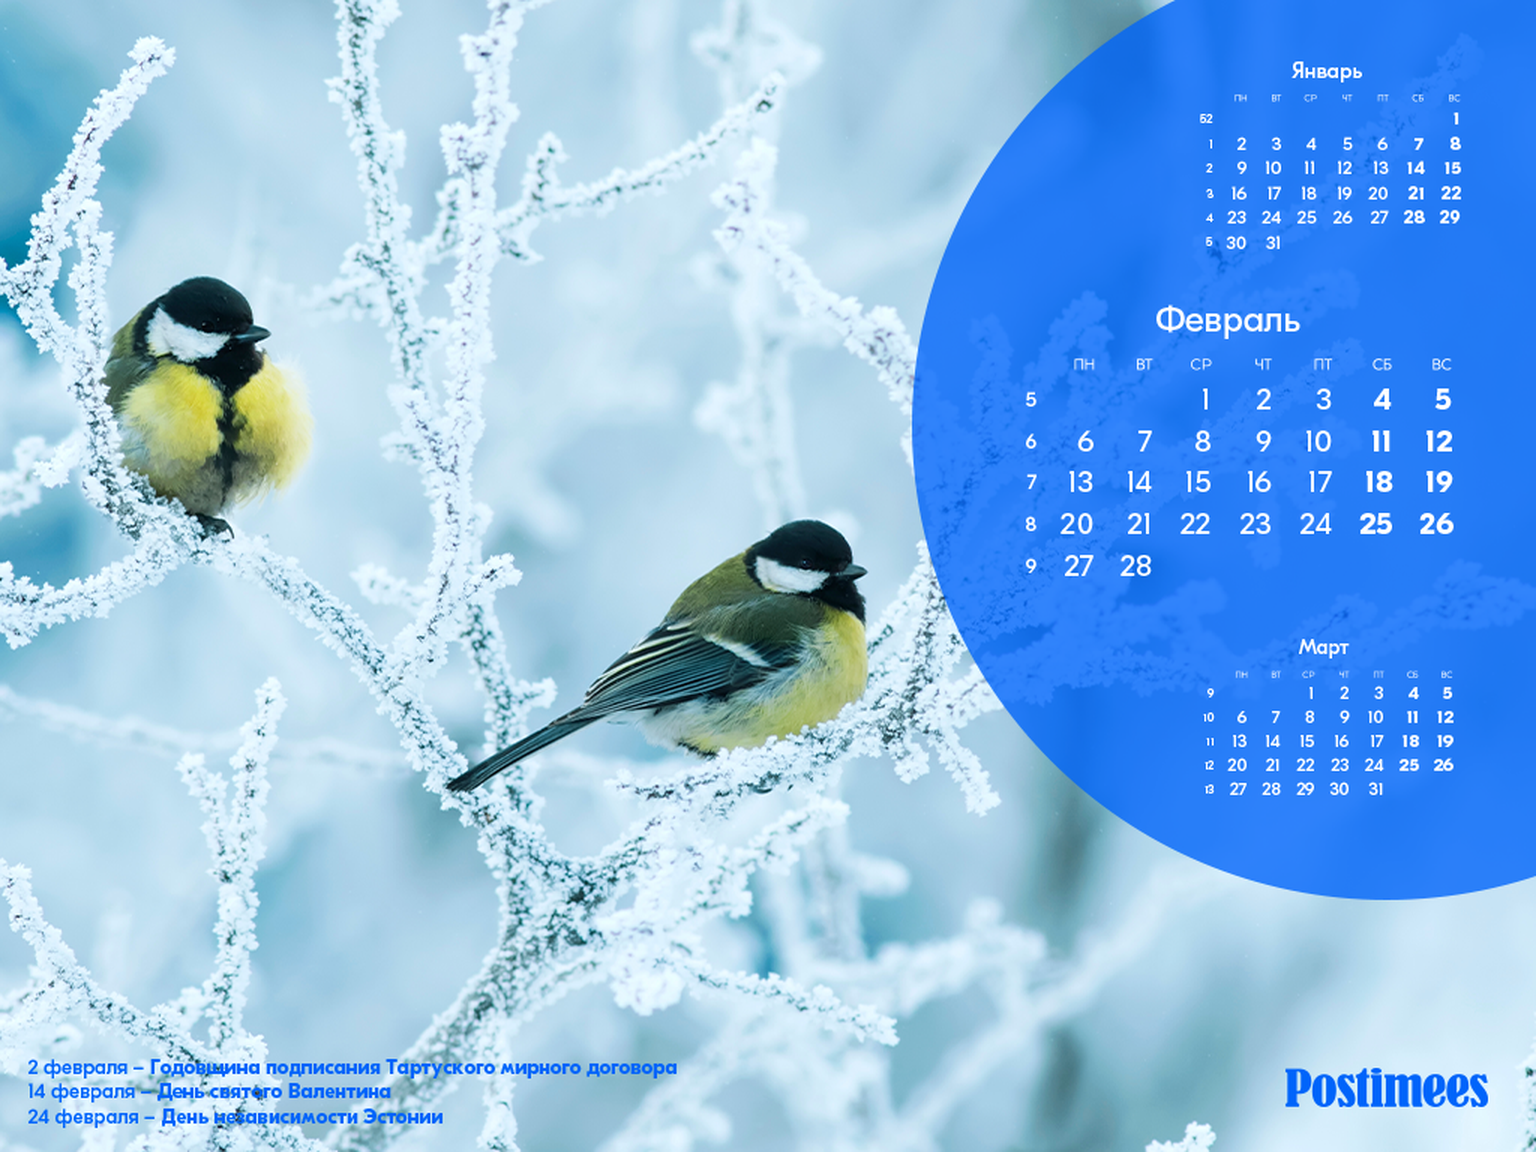 Обои-календарь на февраль (1024*768).